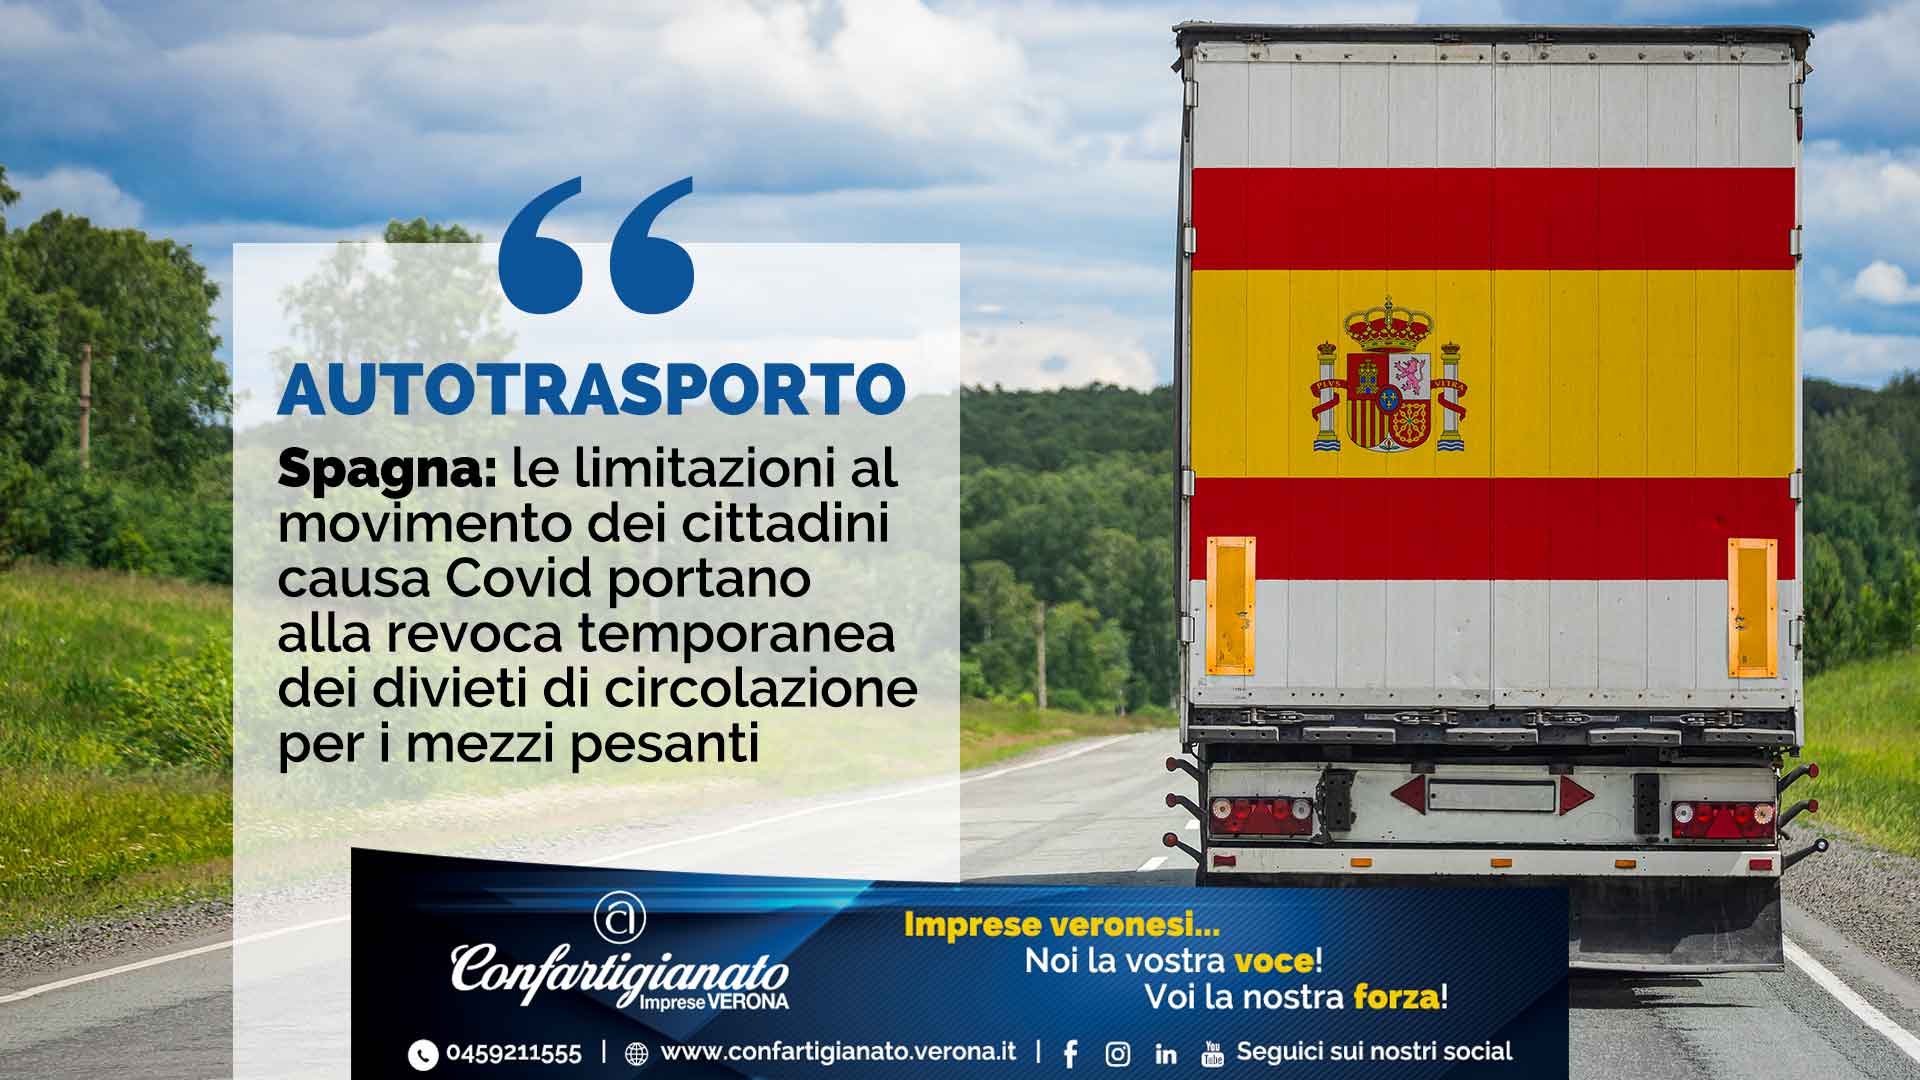 Spagna: le limitazioni al movimento dei cittadini causa Covid portano alla revoca temporanea dei divieti di circolazione per i mezzi pesanti